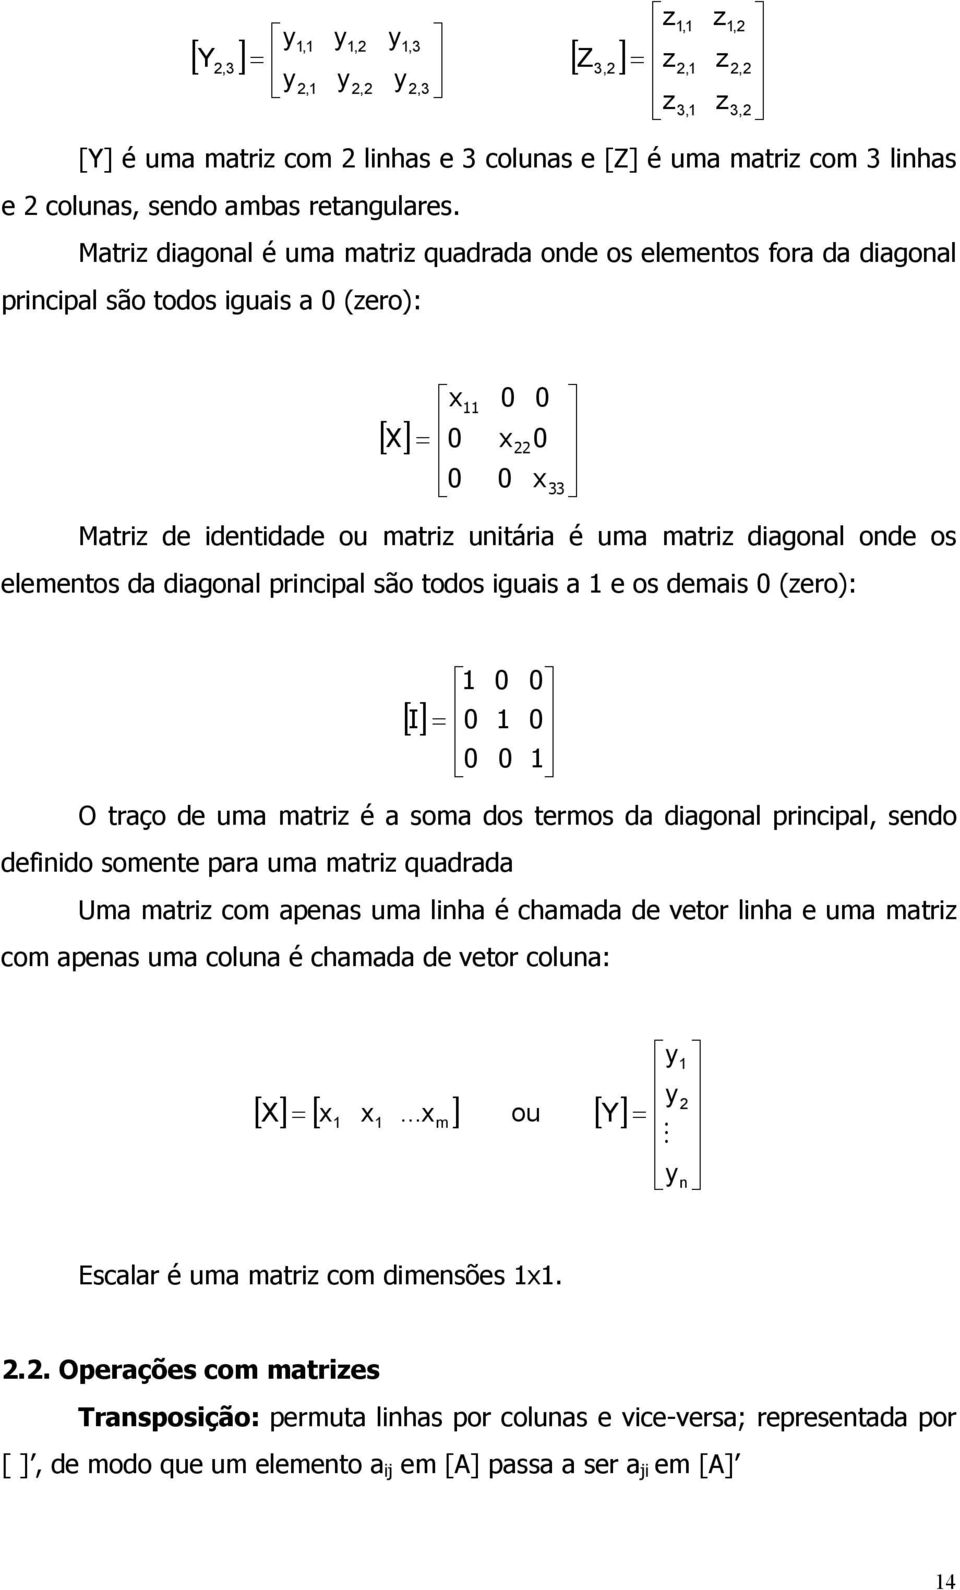 elementos da dagonal prncpal são todos guas a e os demas 0 (zero): [] I = 0 0 0 0 0 0 O traço de uma matrz é a soma dos termos da dagonal prncpal, sendo defndo somente para uma matrz quadrada Uma